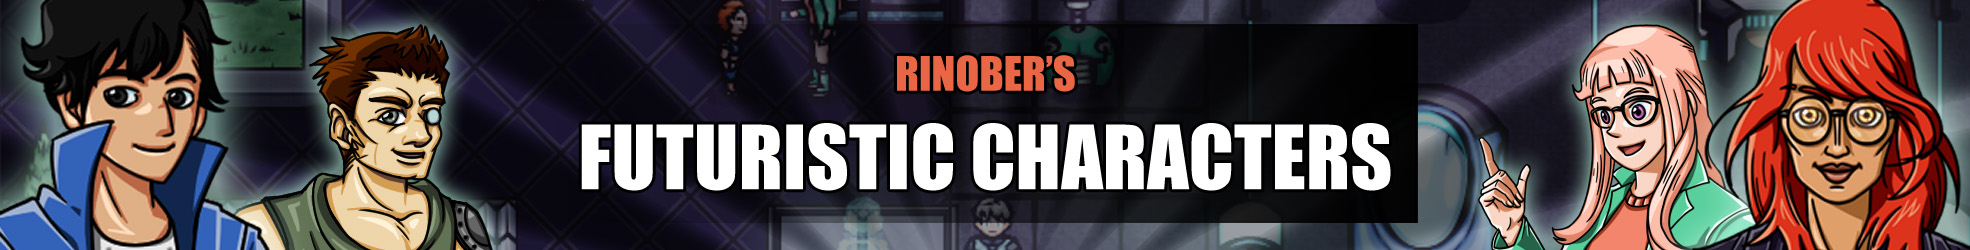 Rinober's Futuristic Characters